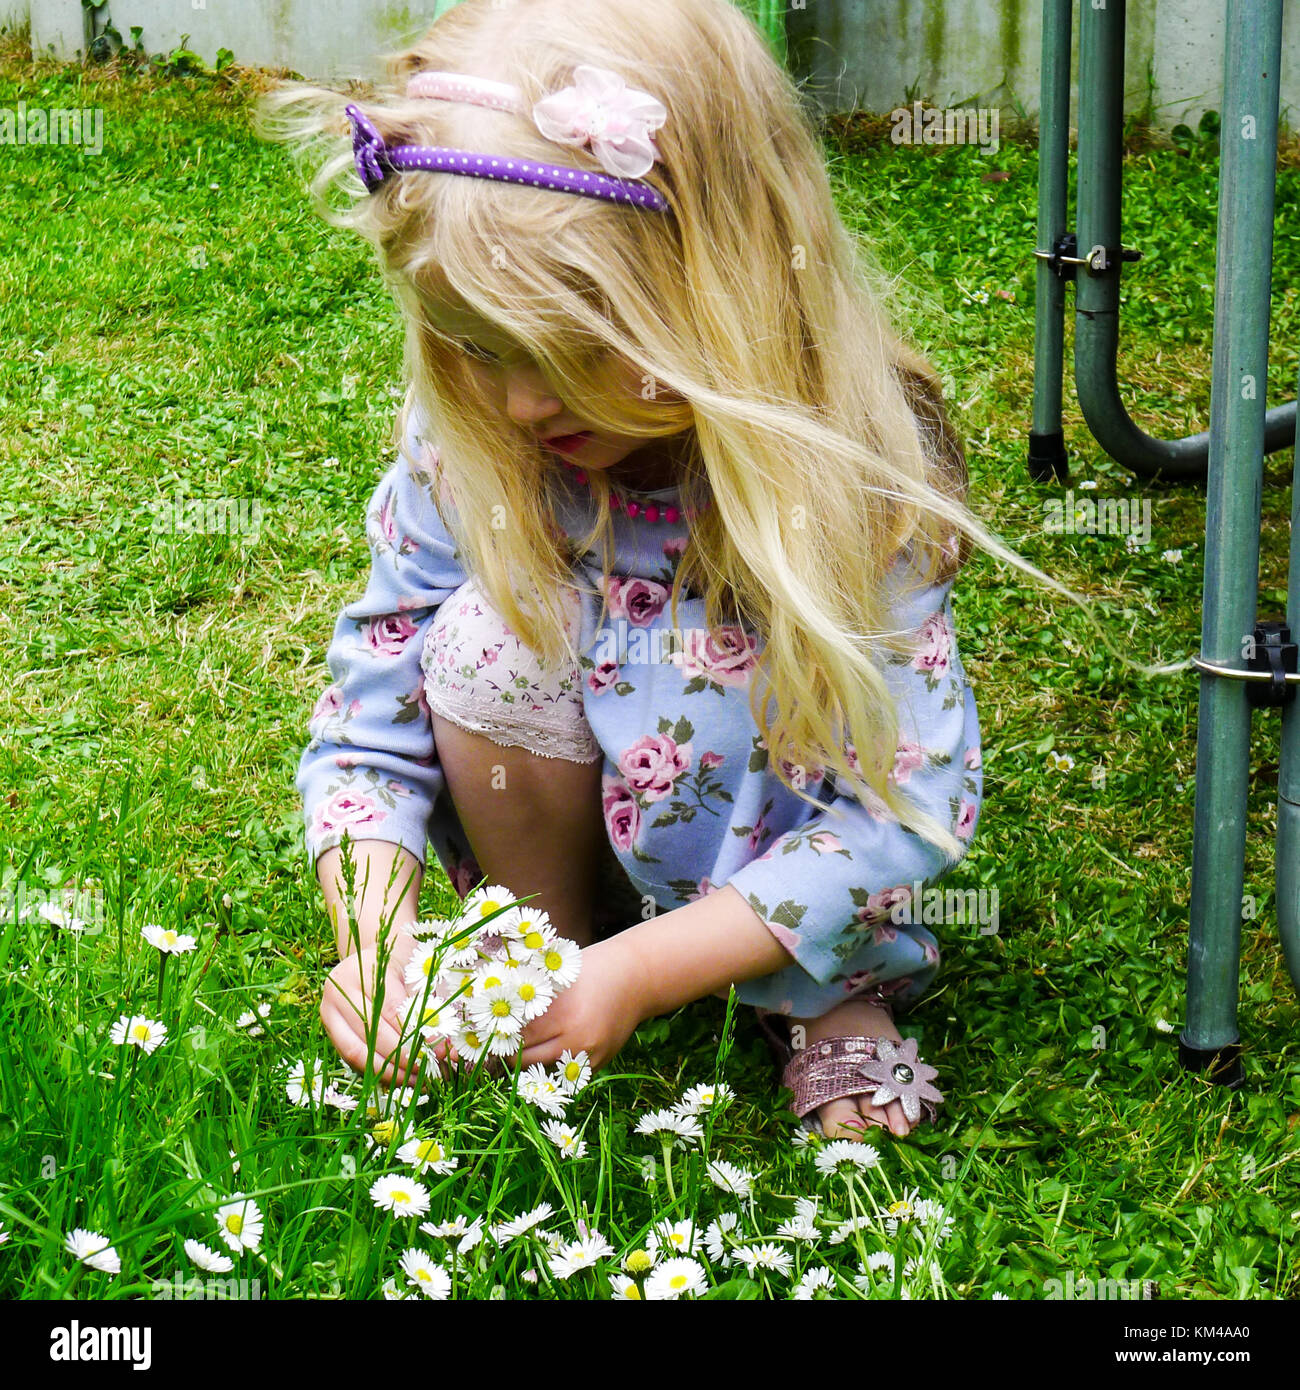 Bambino, bimba bionda capretto con capelli lunghi, picking margherite in erba lunga nel giardino in primavera, Irlanda piccole cose gioia vivere la natura carino Foto Stock